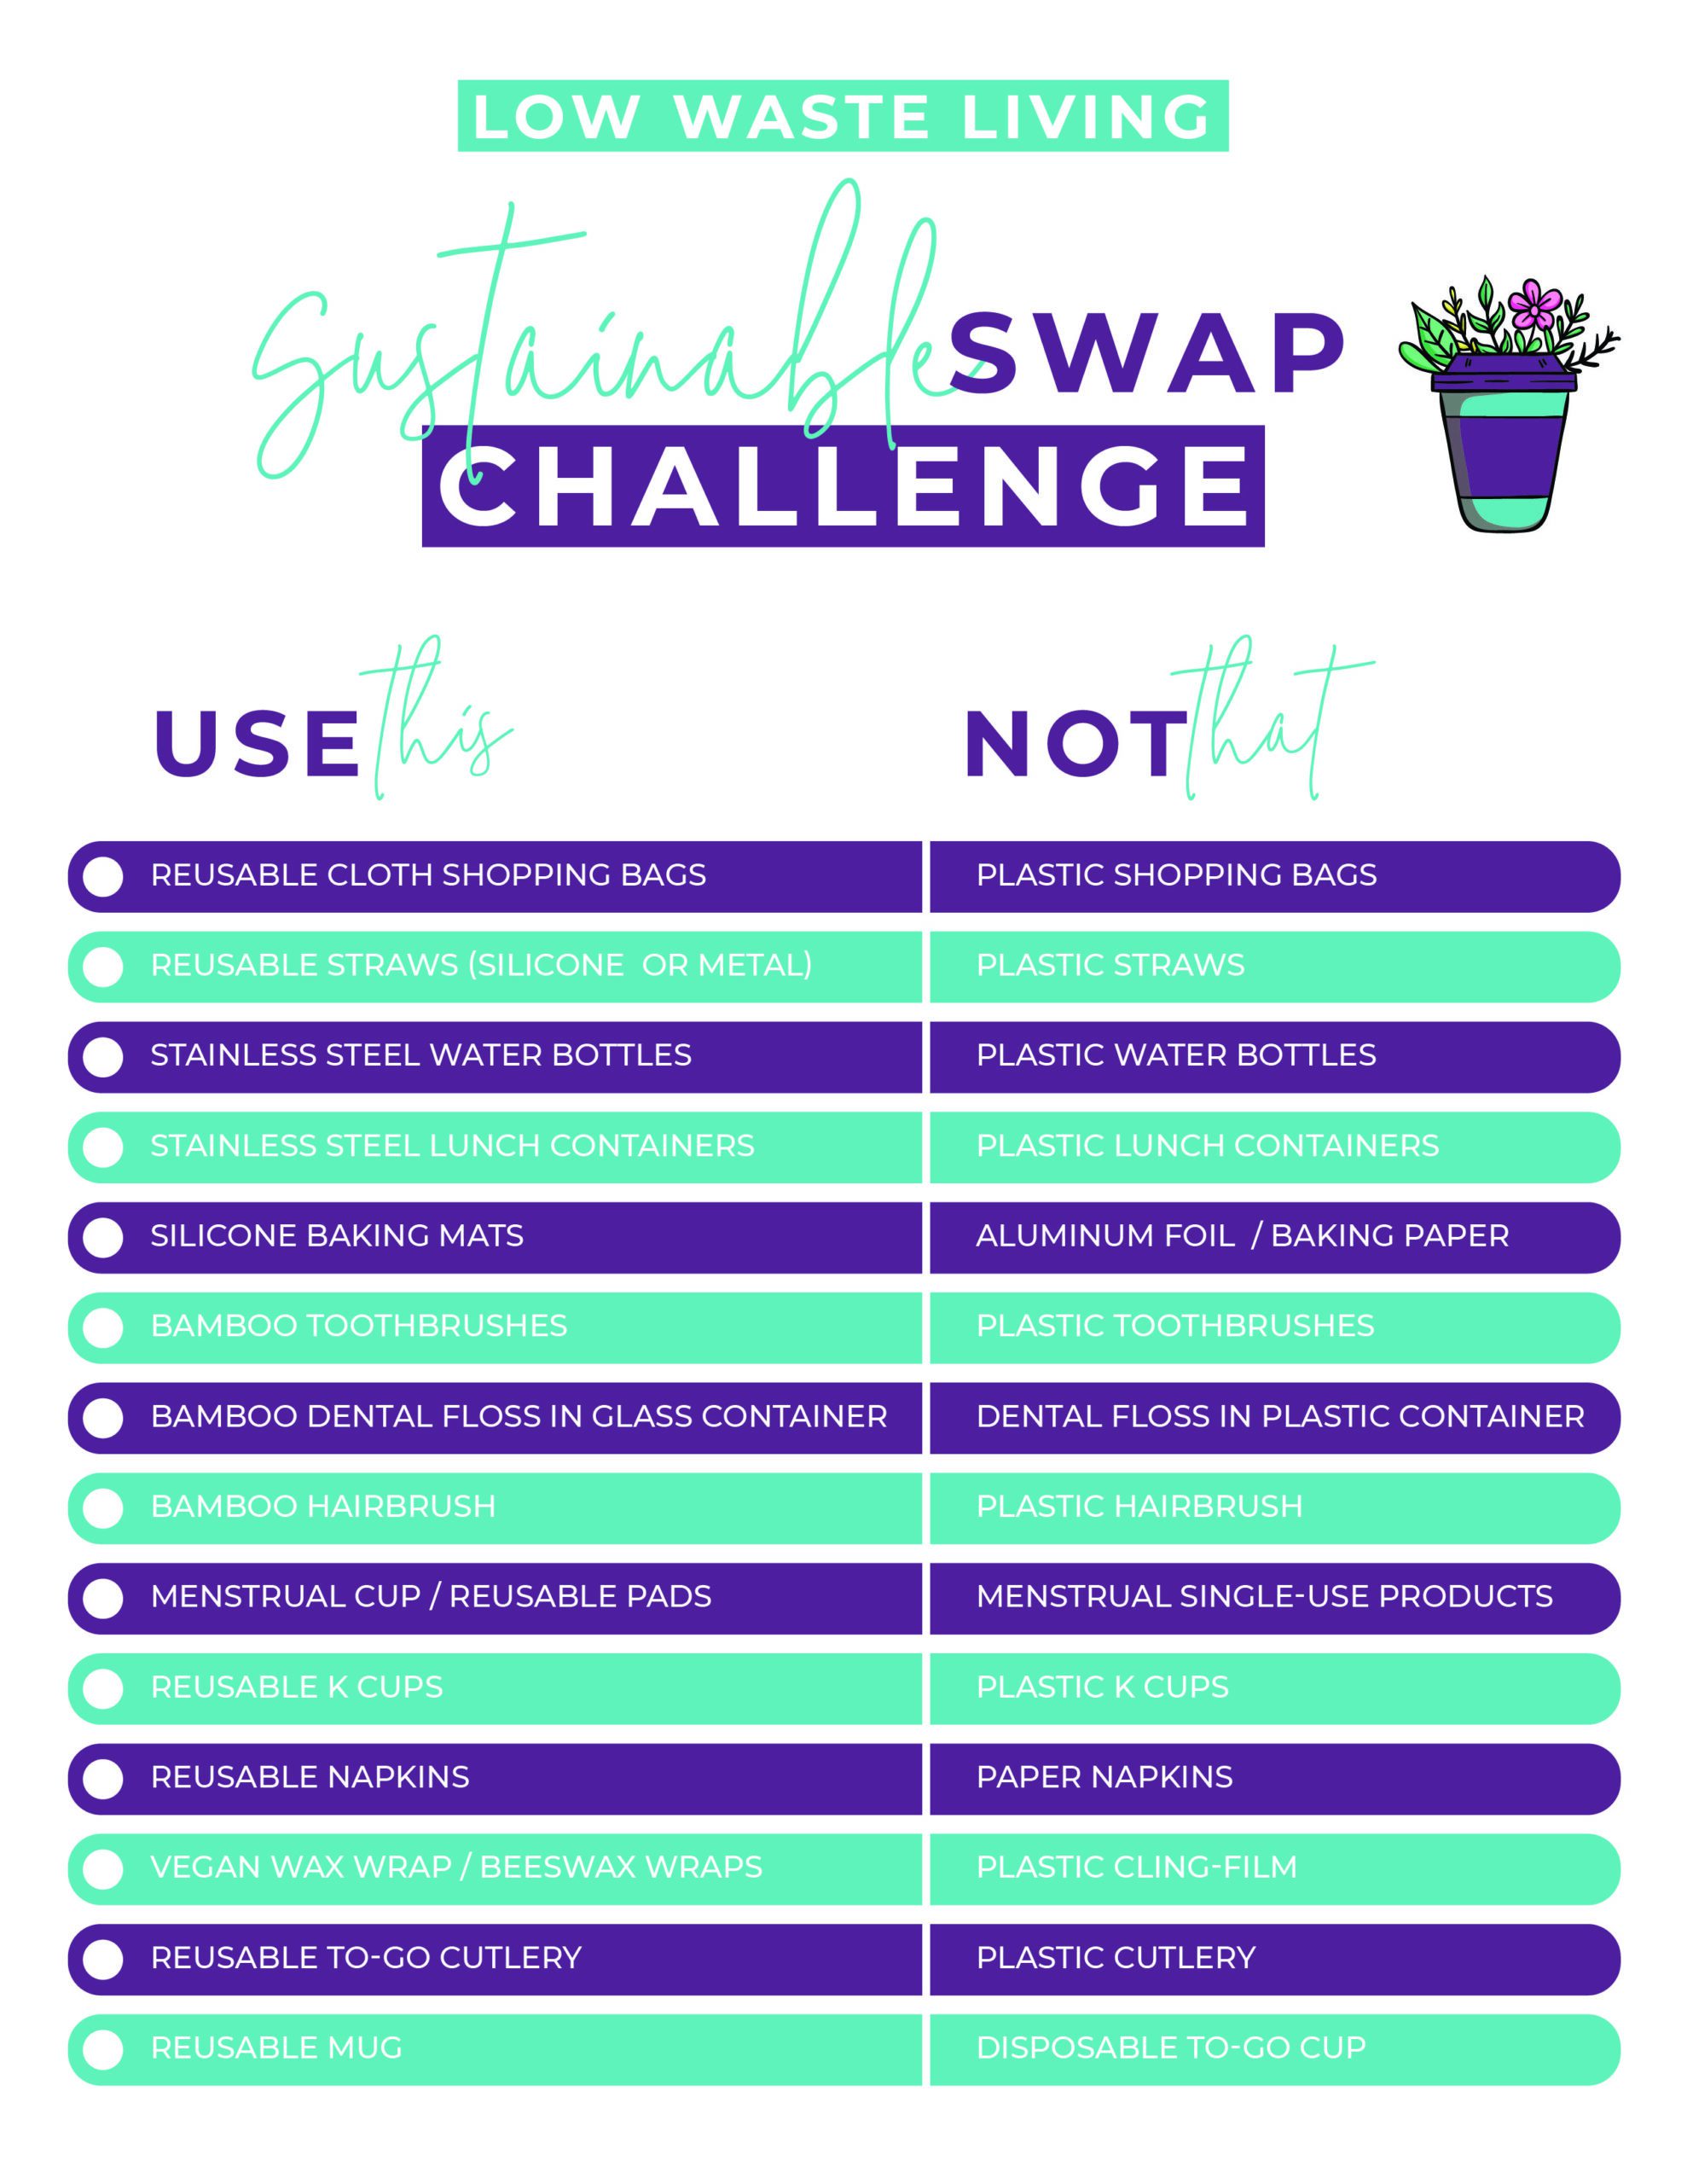 sustainable swaps